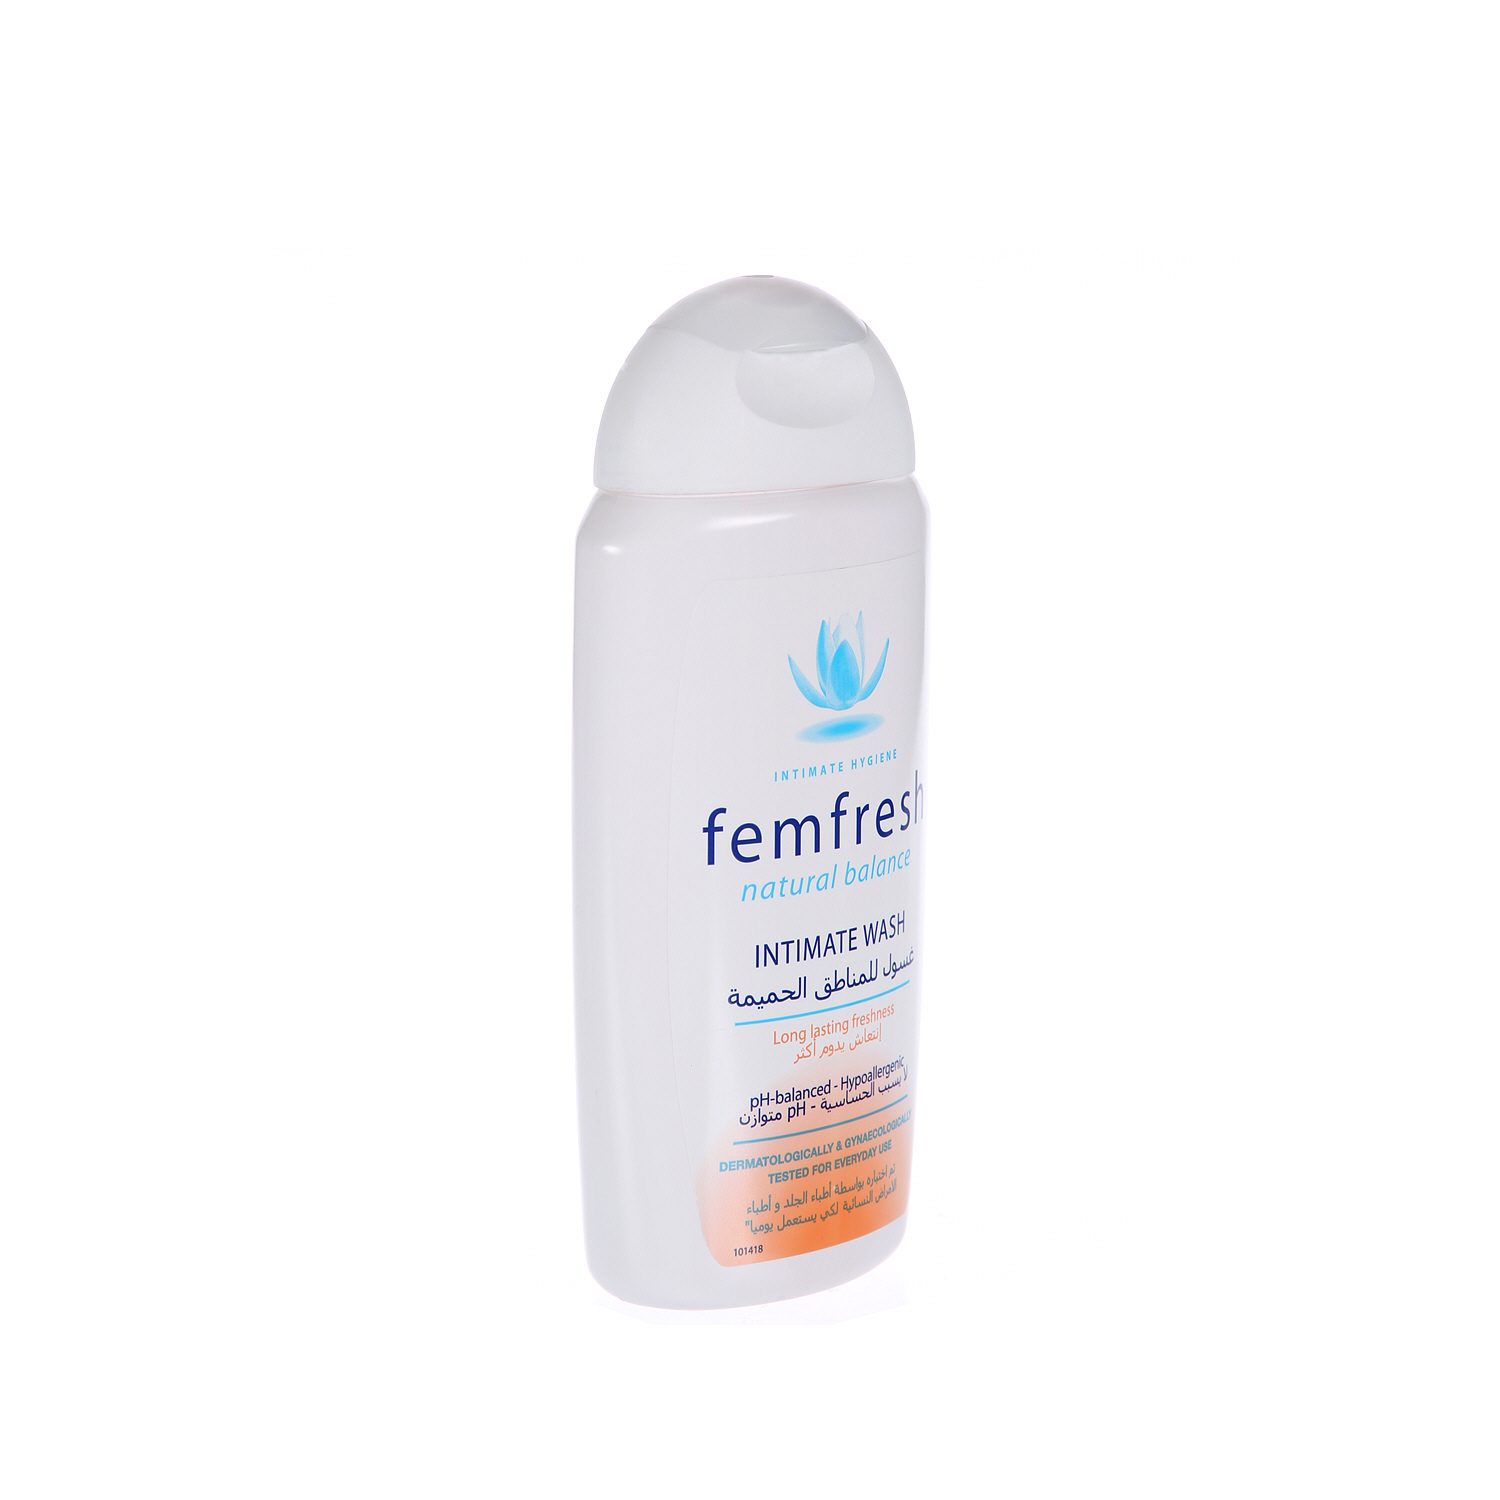 Femfresh Natural Balance Intimate Wash Clear 250 ml